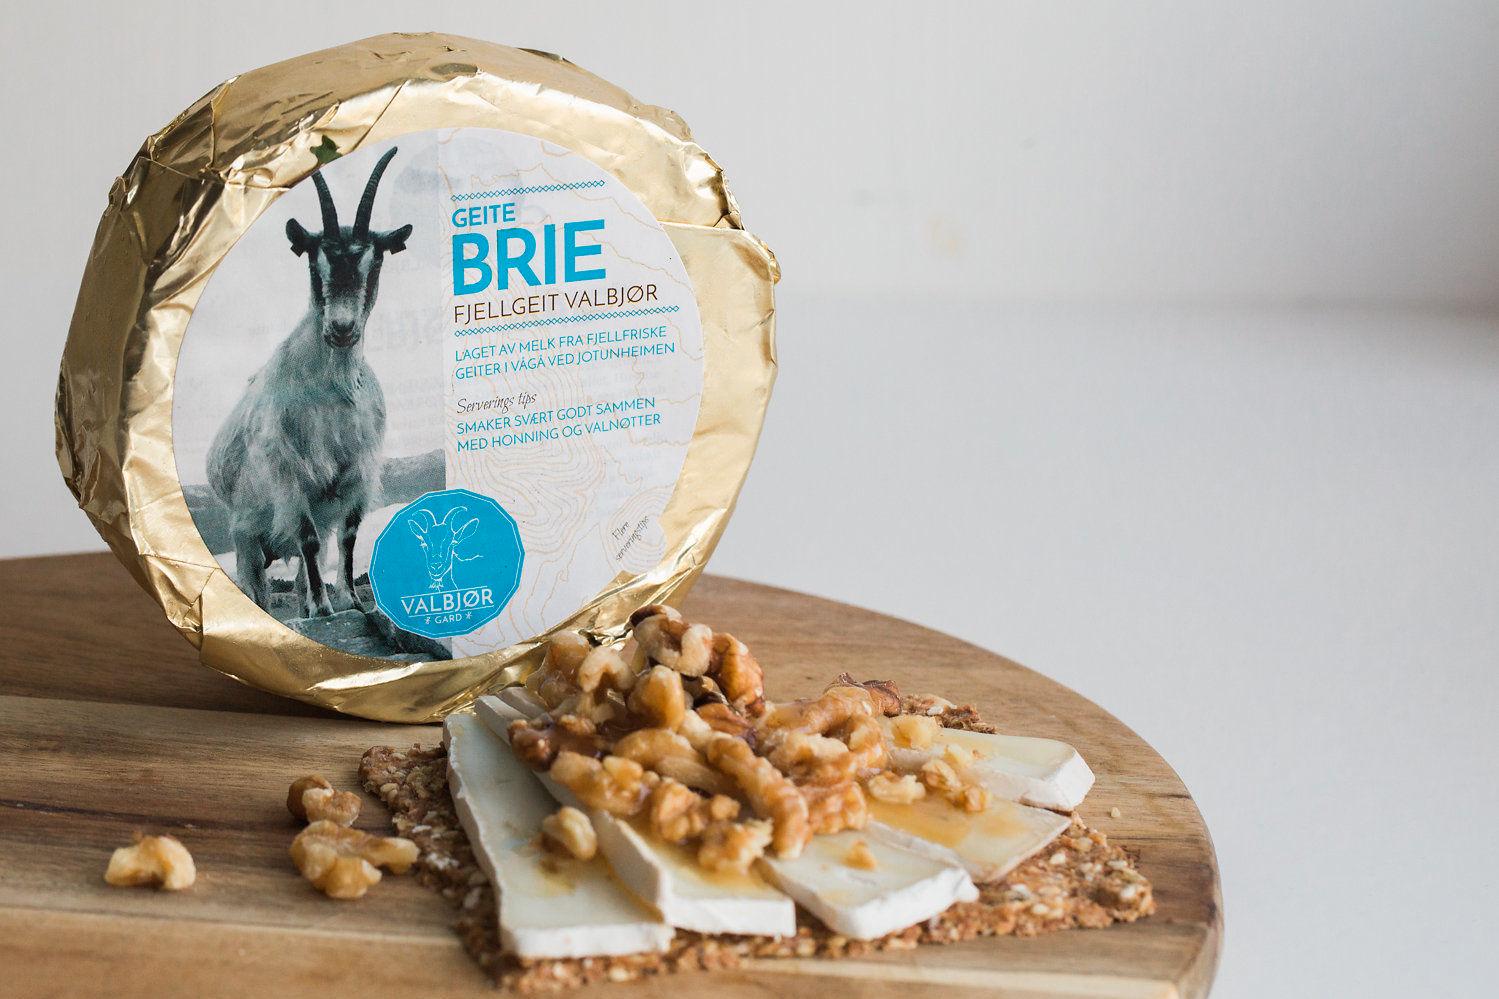 GEITEBRIE: En ost laget av melk fra fjellfriske geiter i Vågå ved Jotunheimen. Den passer spesielt god sammen med honning og valnøtter.